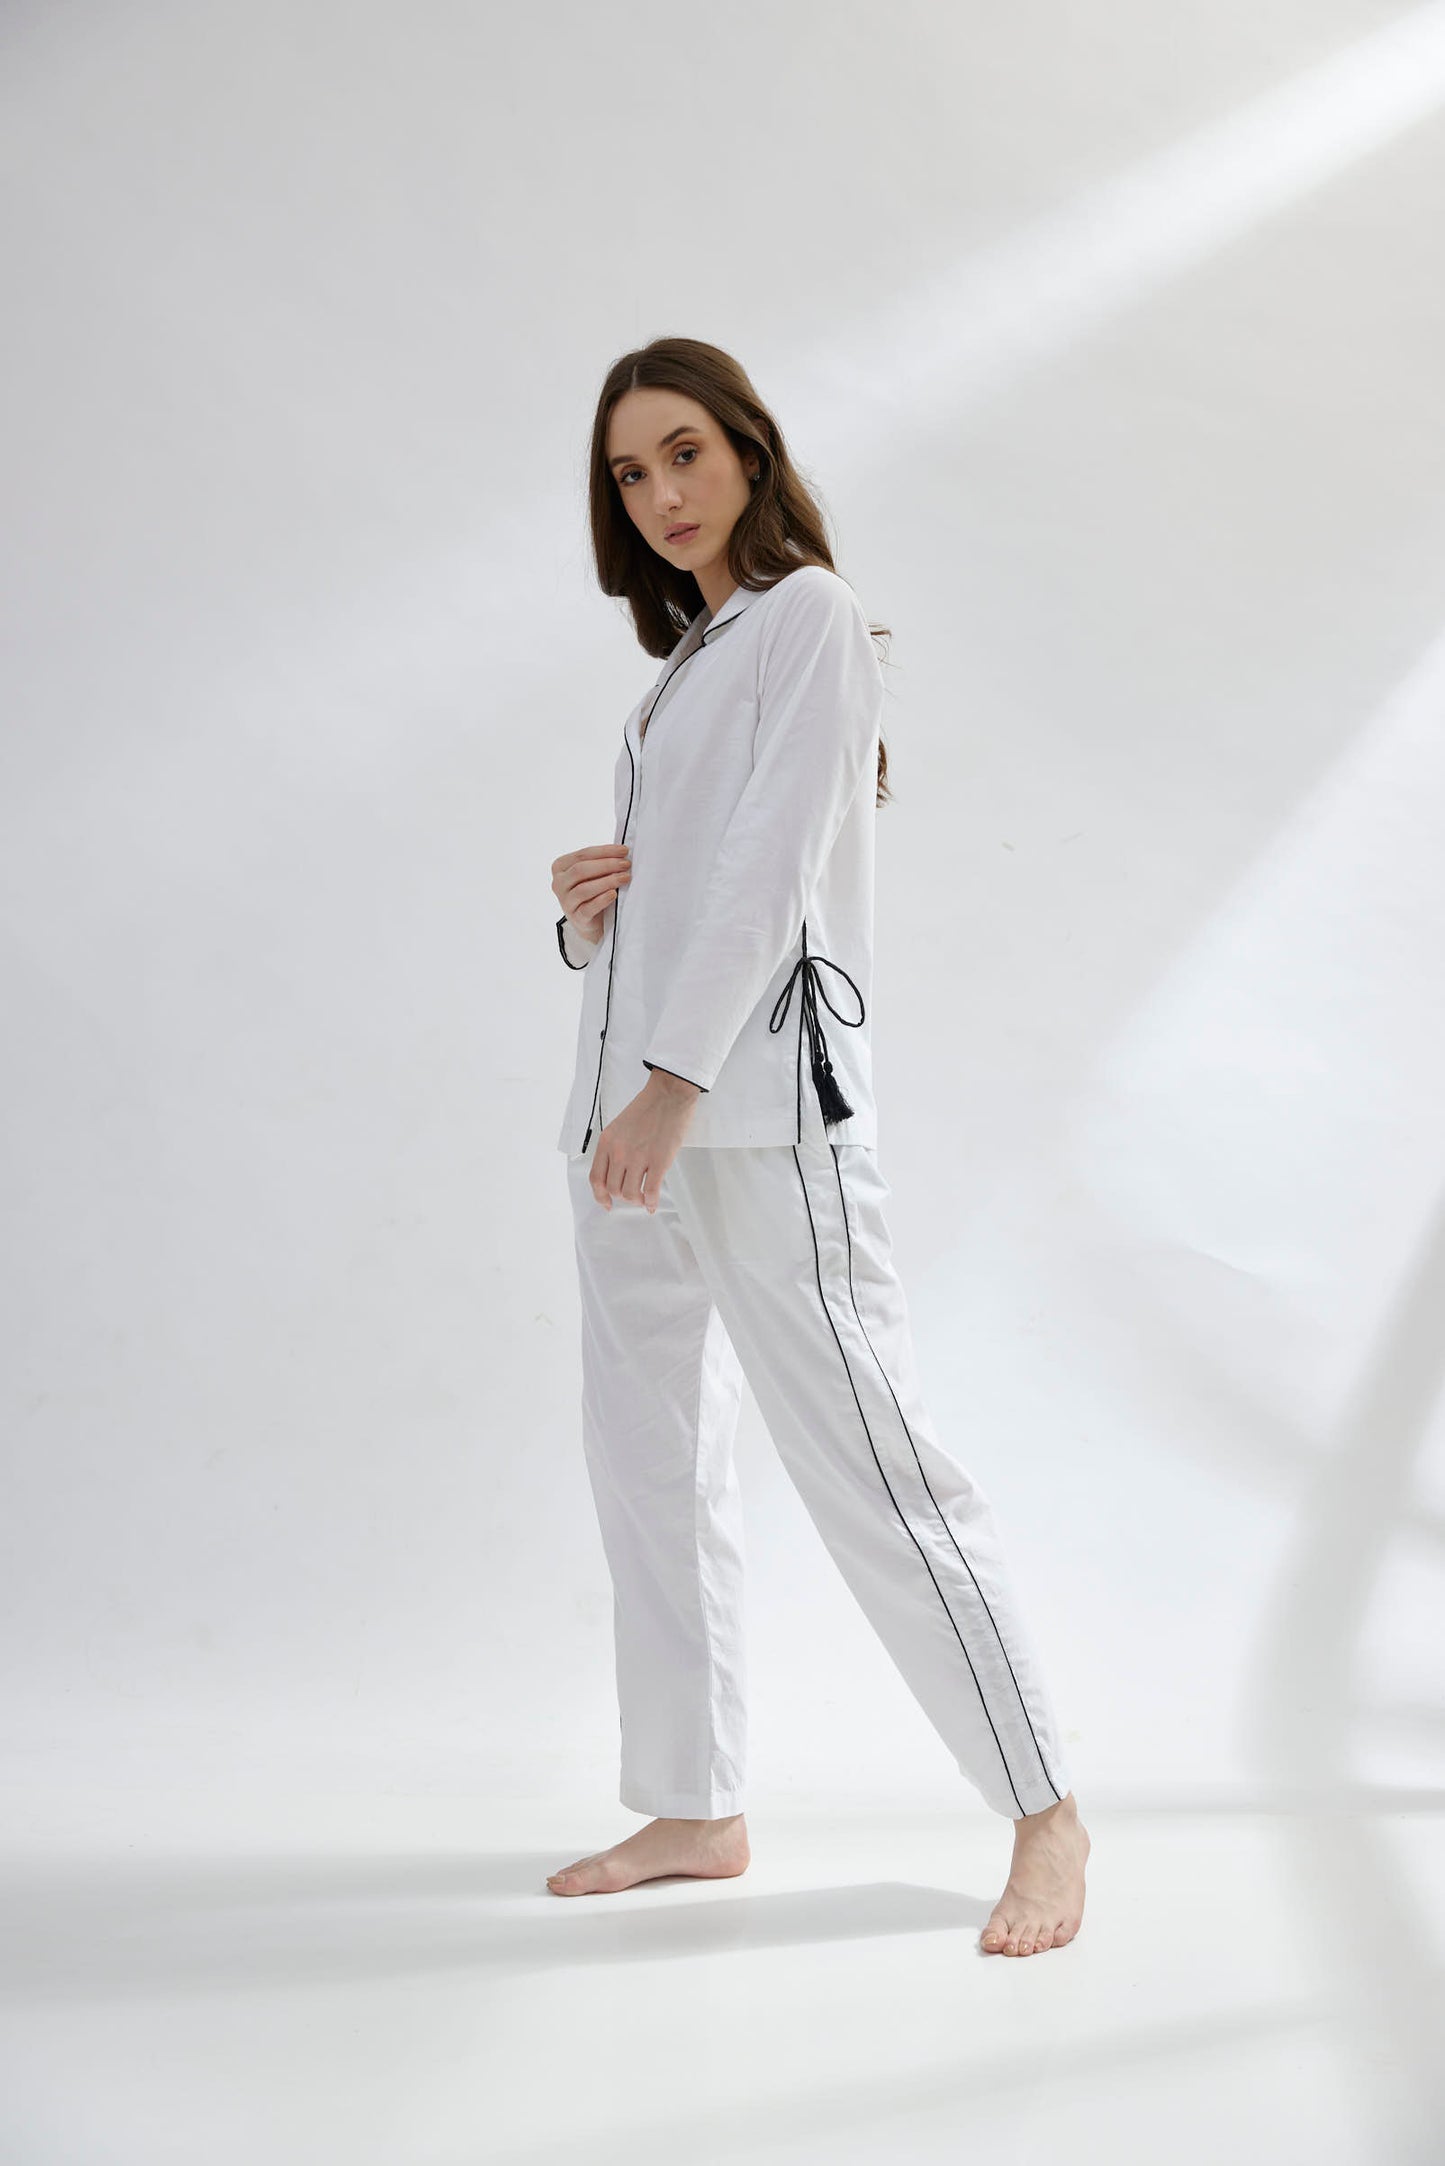 String Along Nightwear (Women) (White)